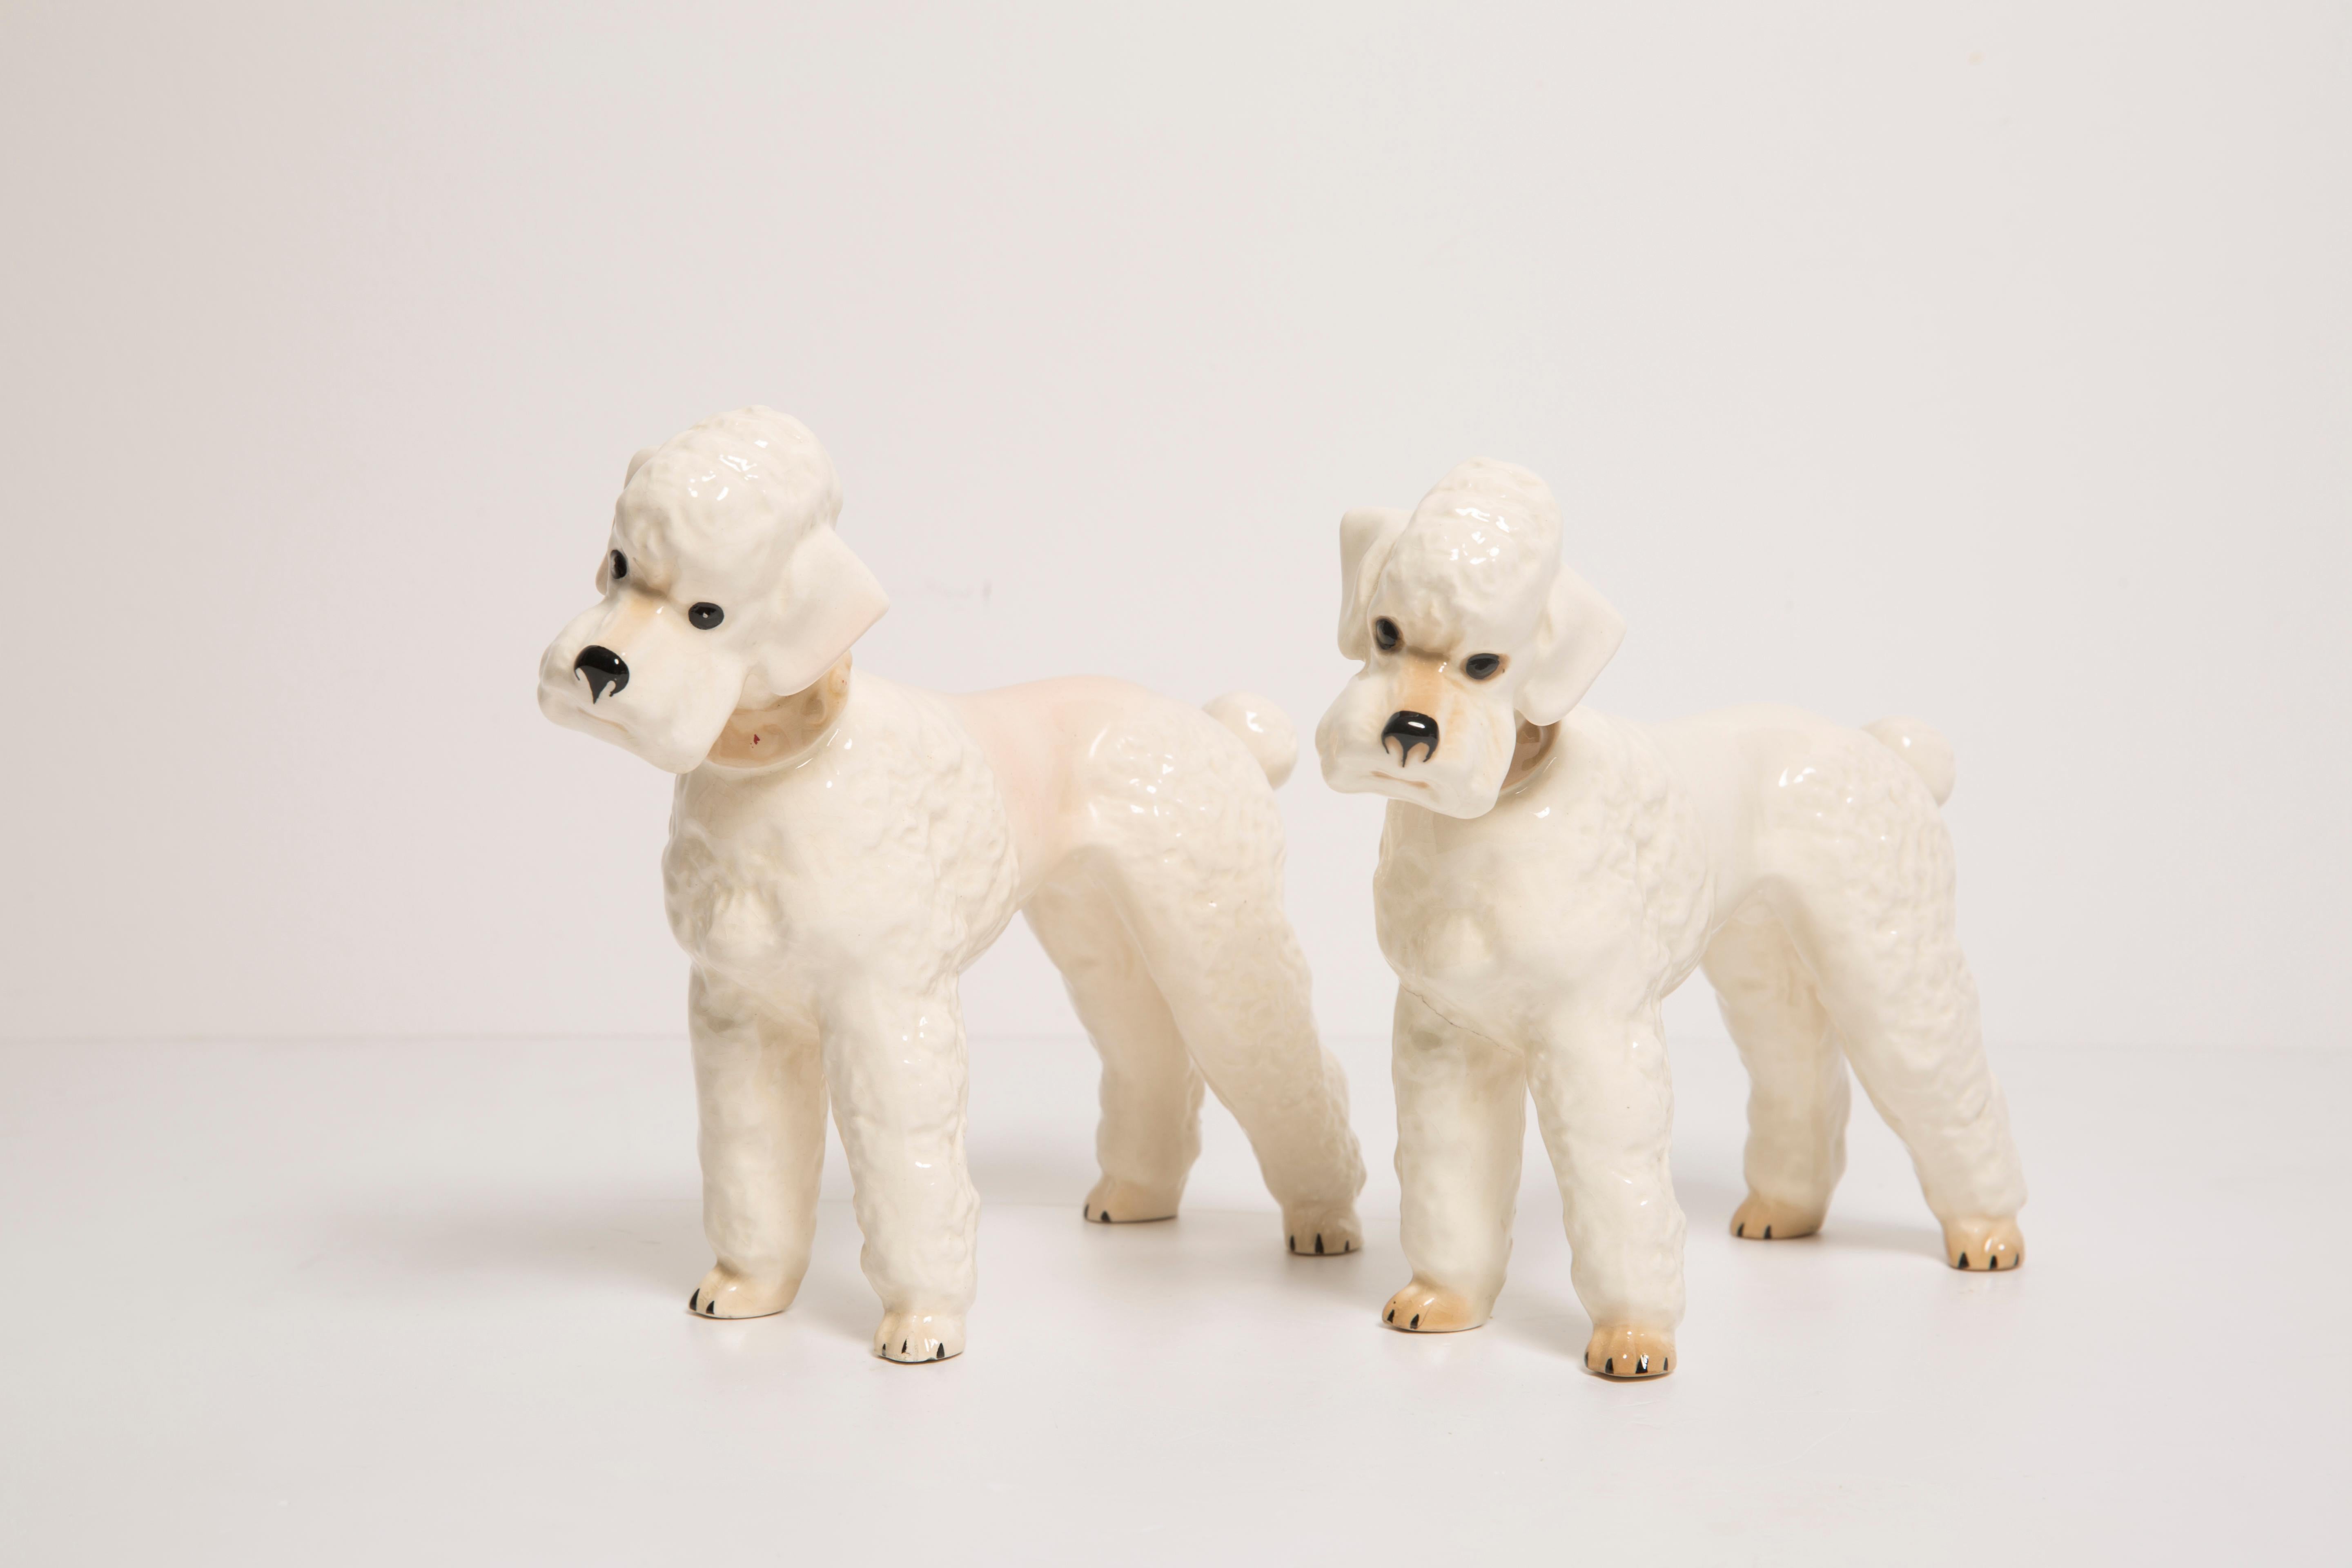 Bemalte Keramik, guter originaler Vintage-Zustand. 
Ein Hund ist repariert - wie auf den Bildern zu sehen.
Schöne und einzigartige dekorative Skulpturen. 
Weiße Pudelhunde-Skulpturen wurden in Italien hergestellt. 
Nur ein Paar verfügbar.